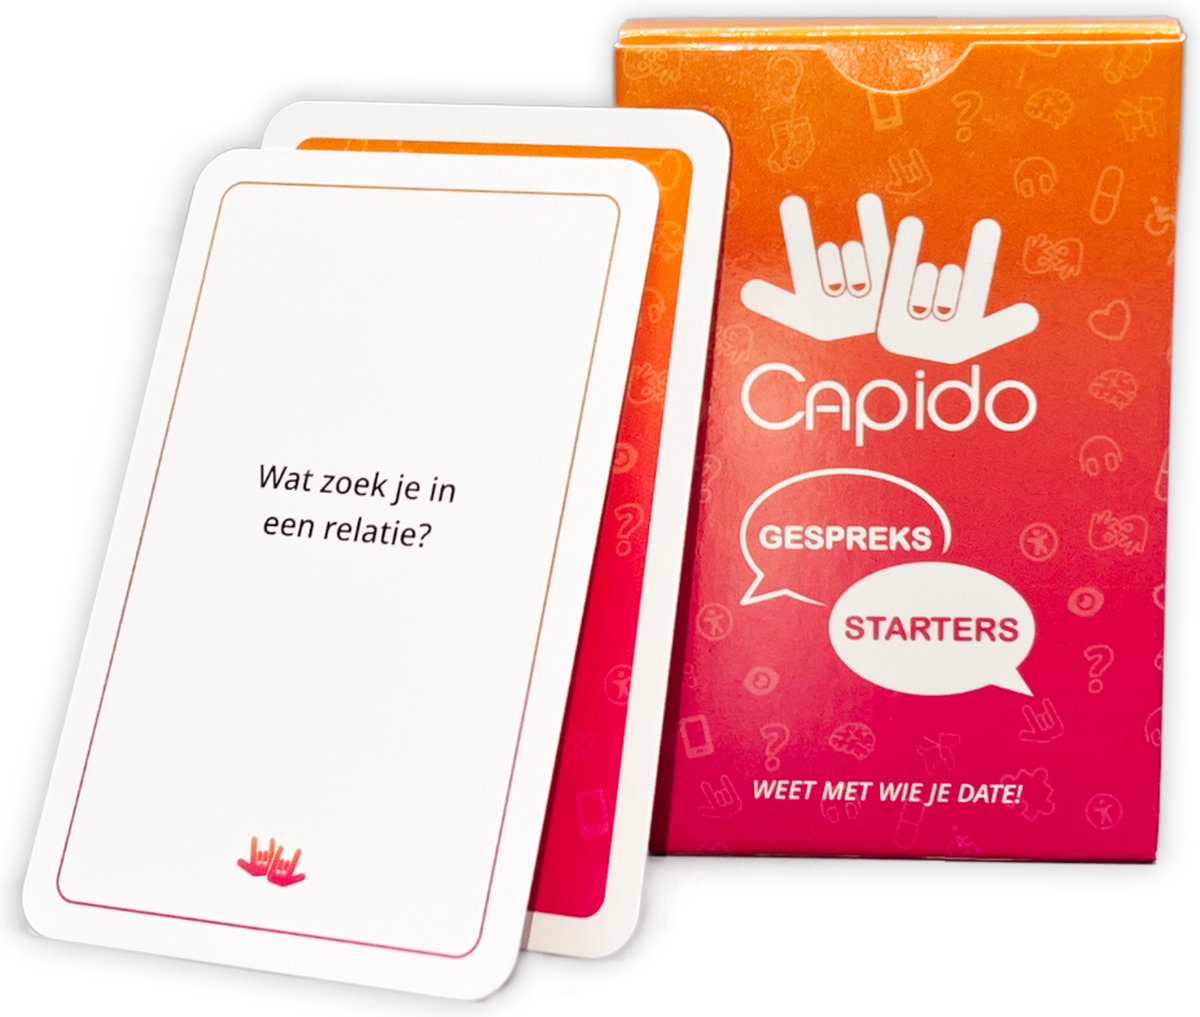 Capido Gespreksstarters - Dating kaartspel